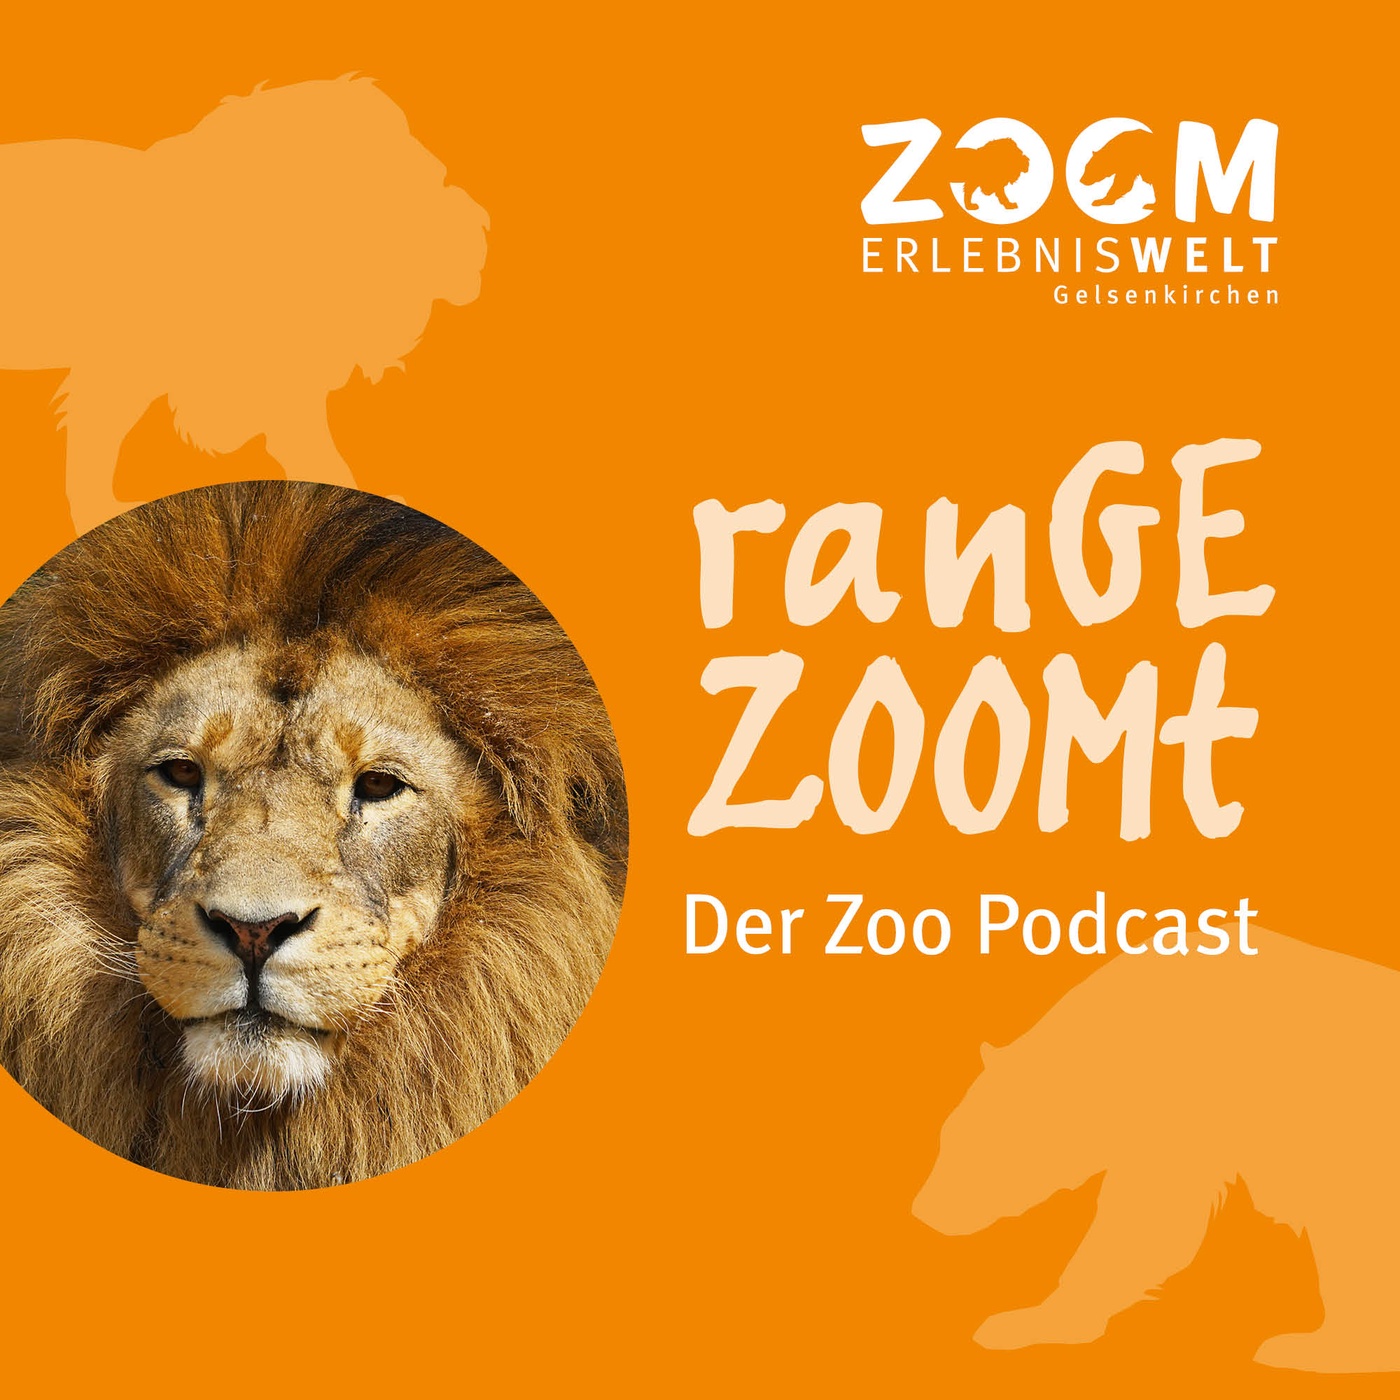 ranGEZOOMt - Der Podcast aus der ZOOM Erlebniswelt